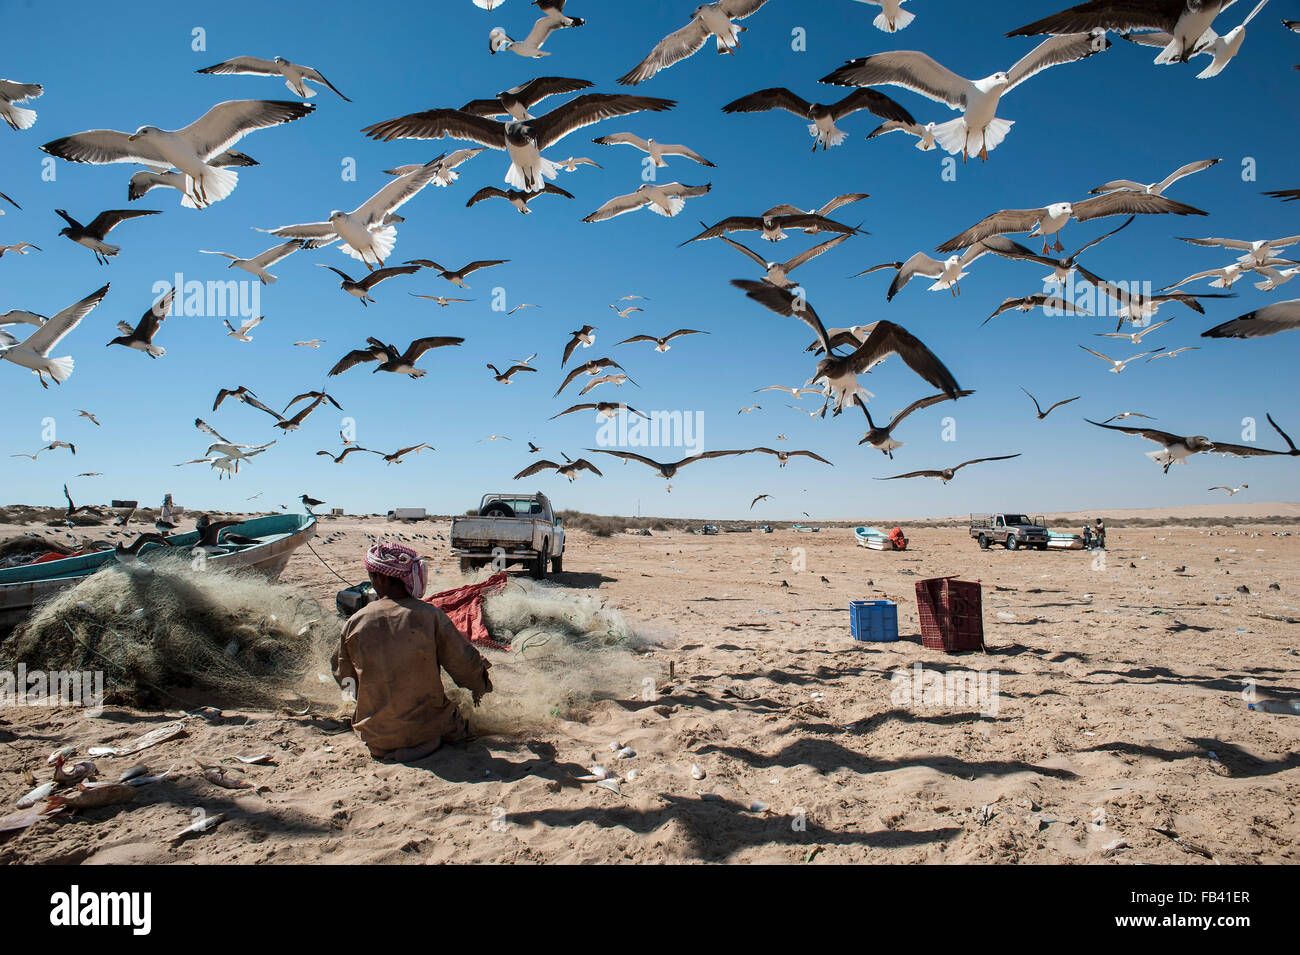 Fisherman estraendo il pesce dalle reti circondata da gabbiani, Oman Foto Stock